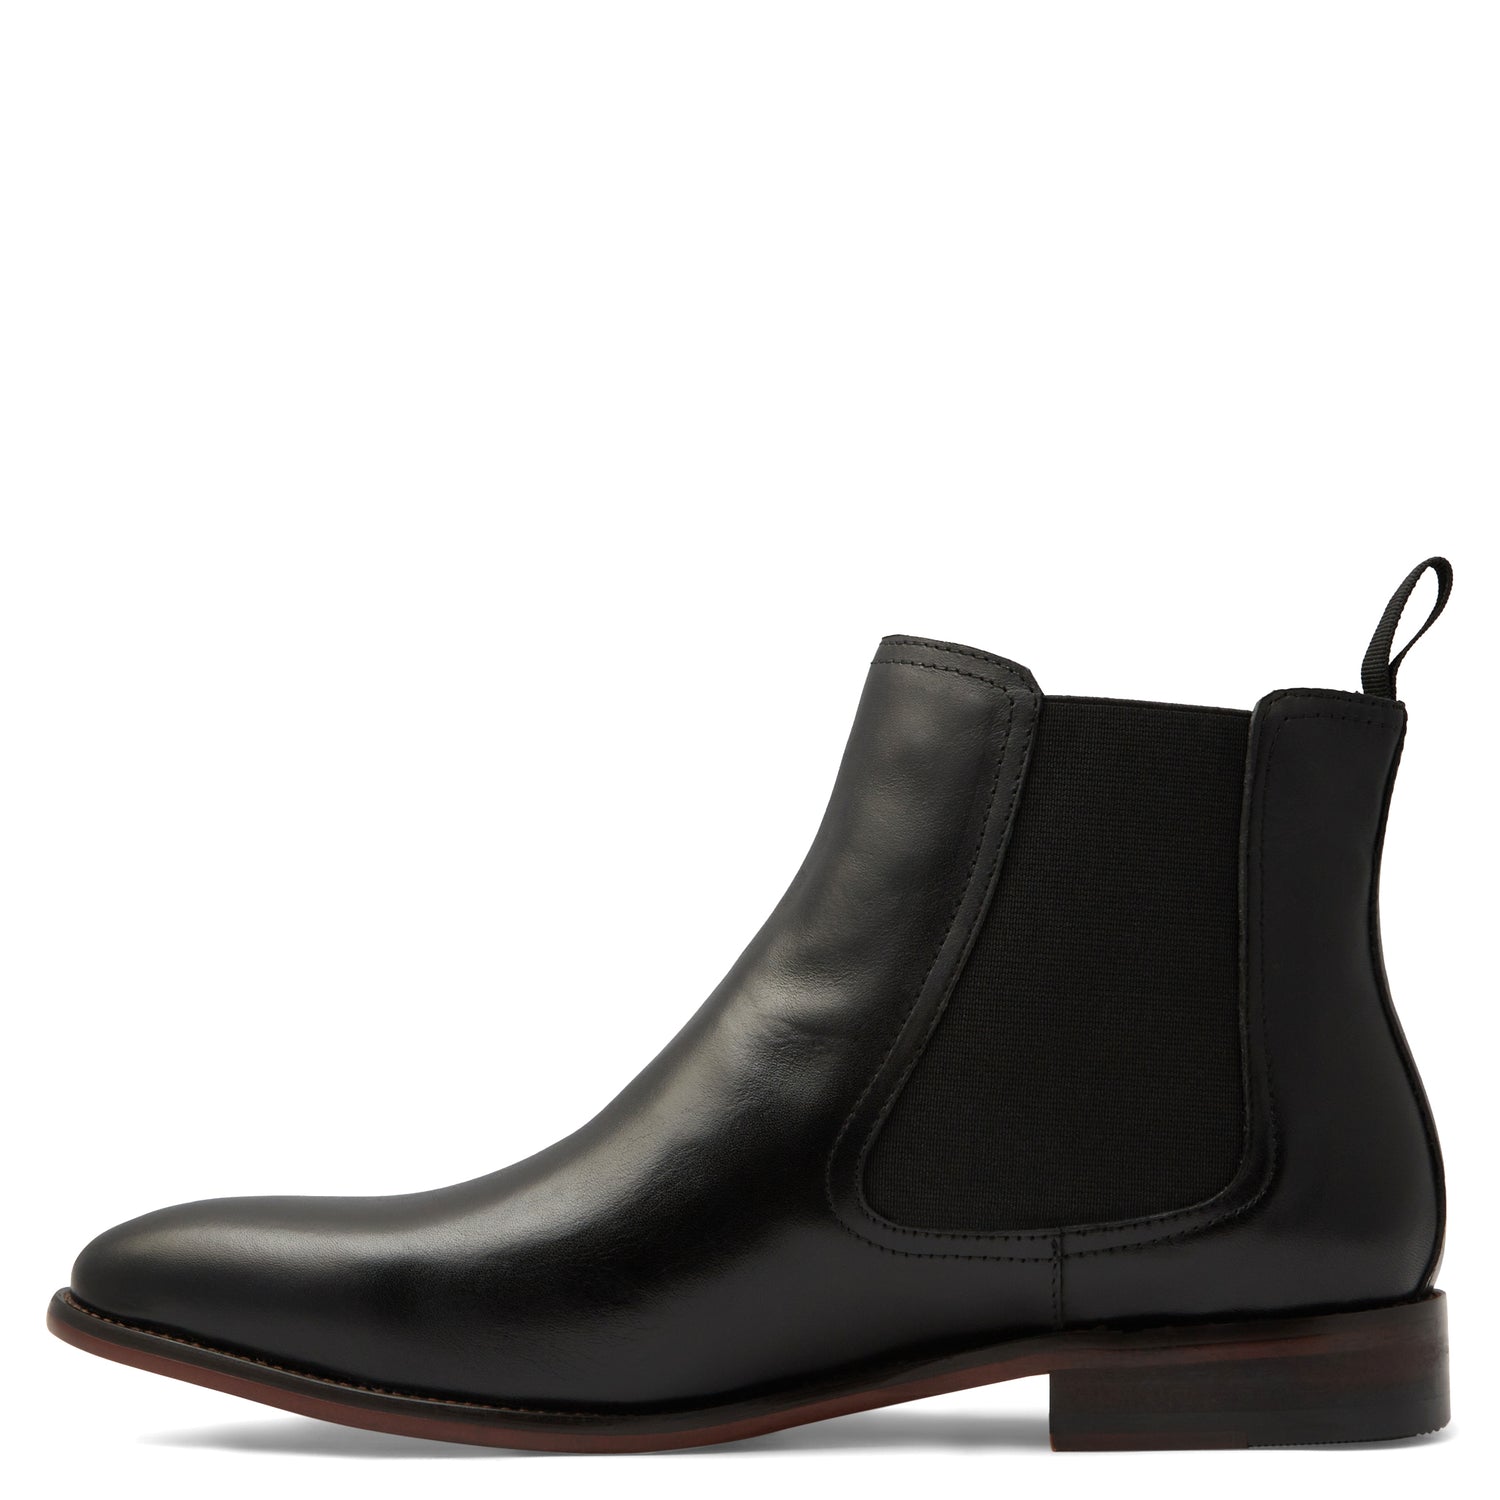 Men's Shoes - Batsanis Jason Black - Leather Chelsea Boots